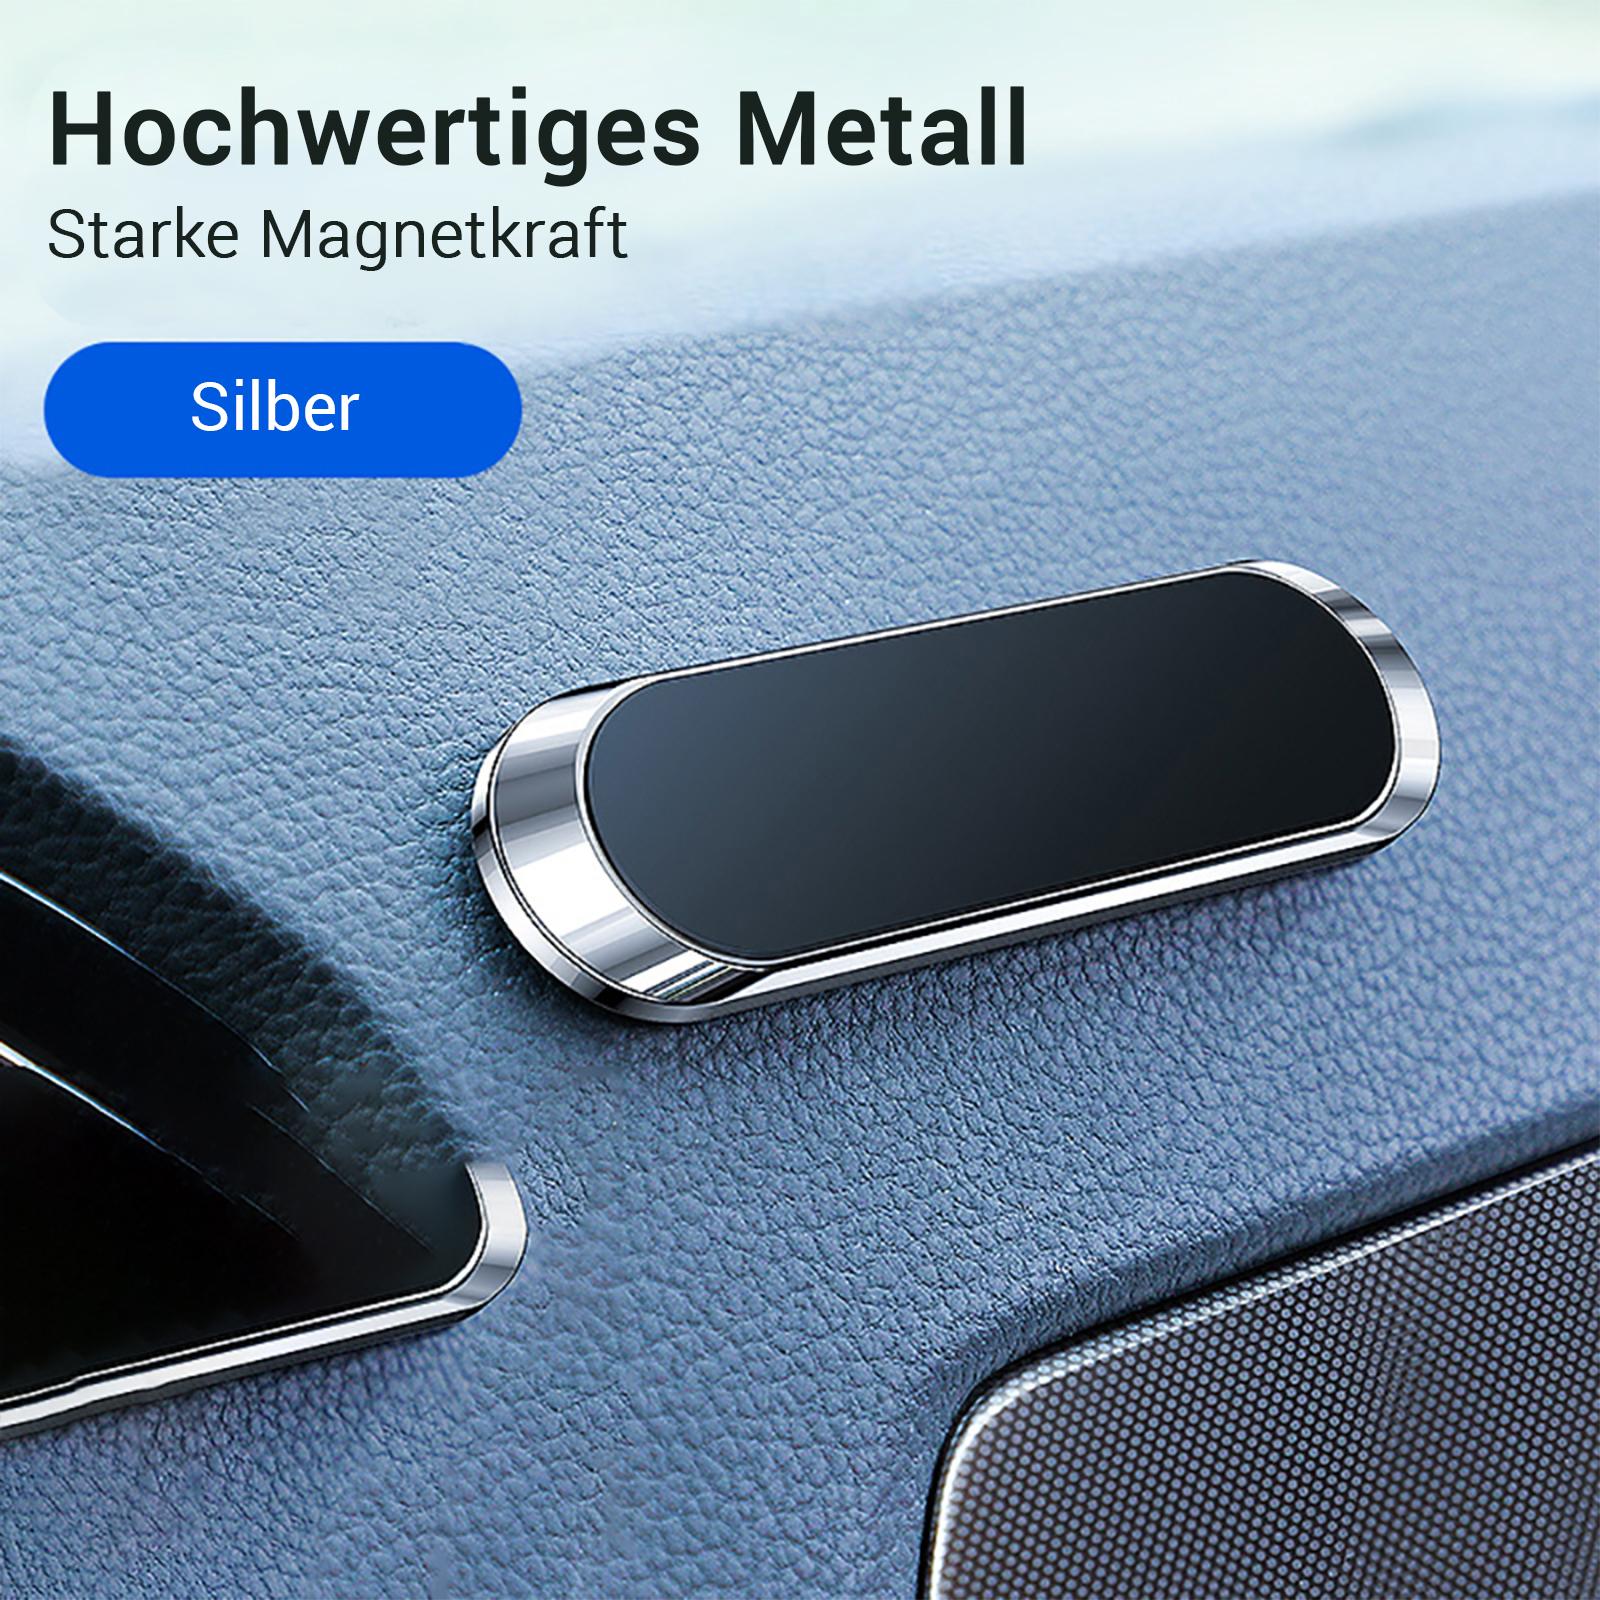 Handy Kfz Magnethalterung für Auto als Werbeartikel mit Logo